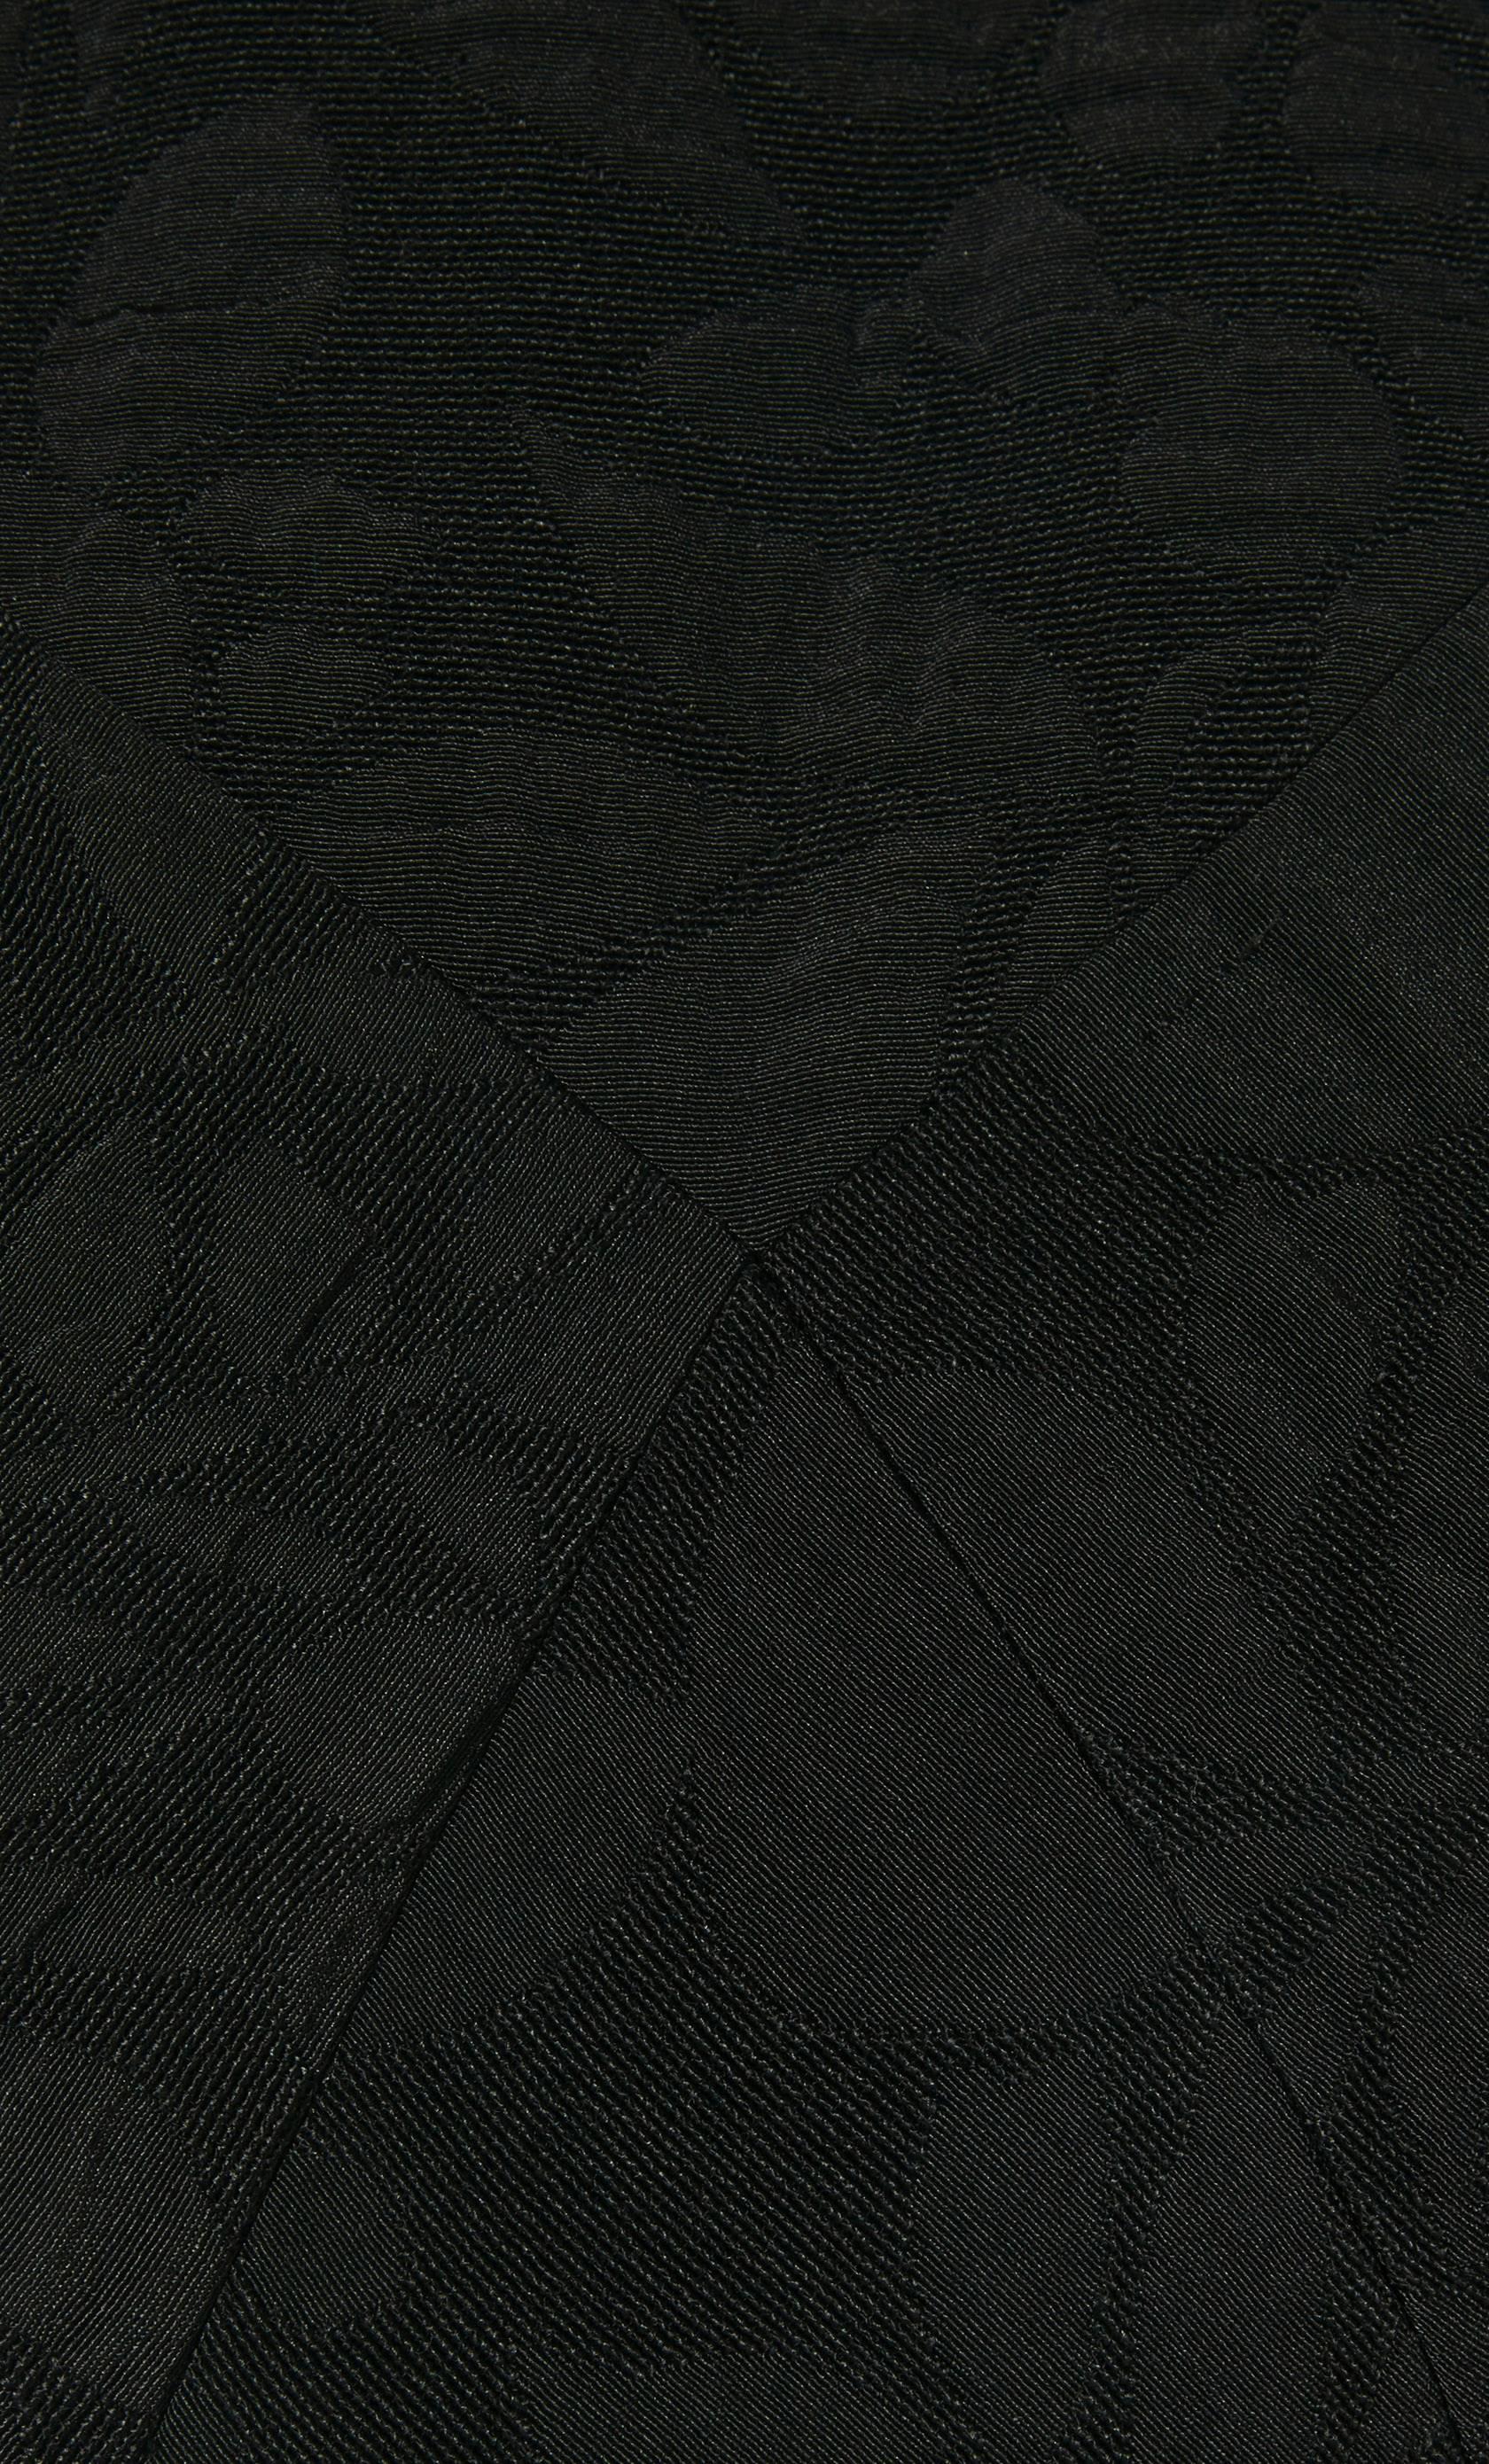 Black Galanos black dress, circa 1968 For Sale